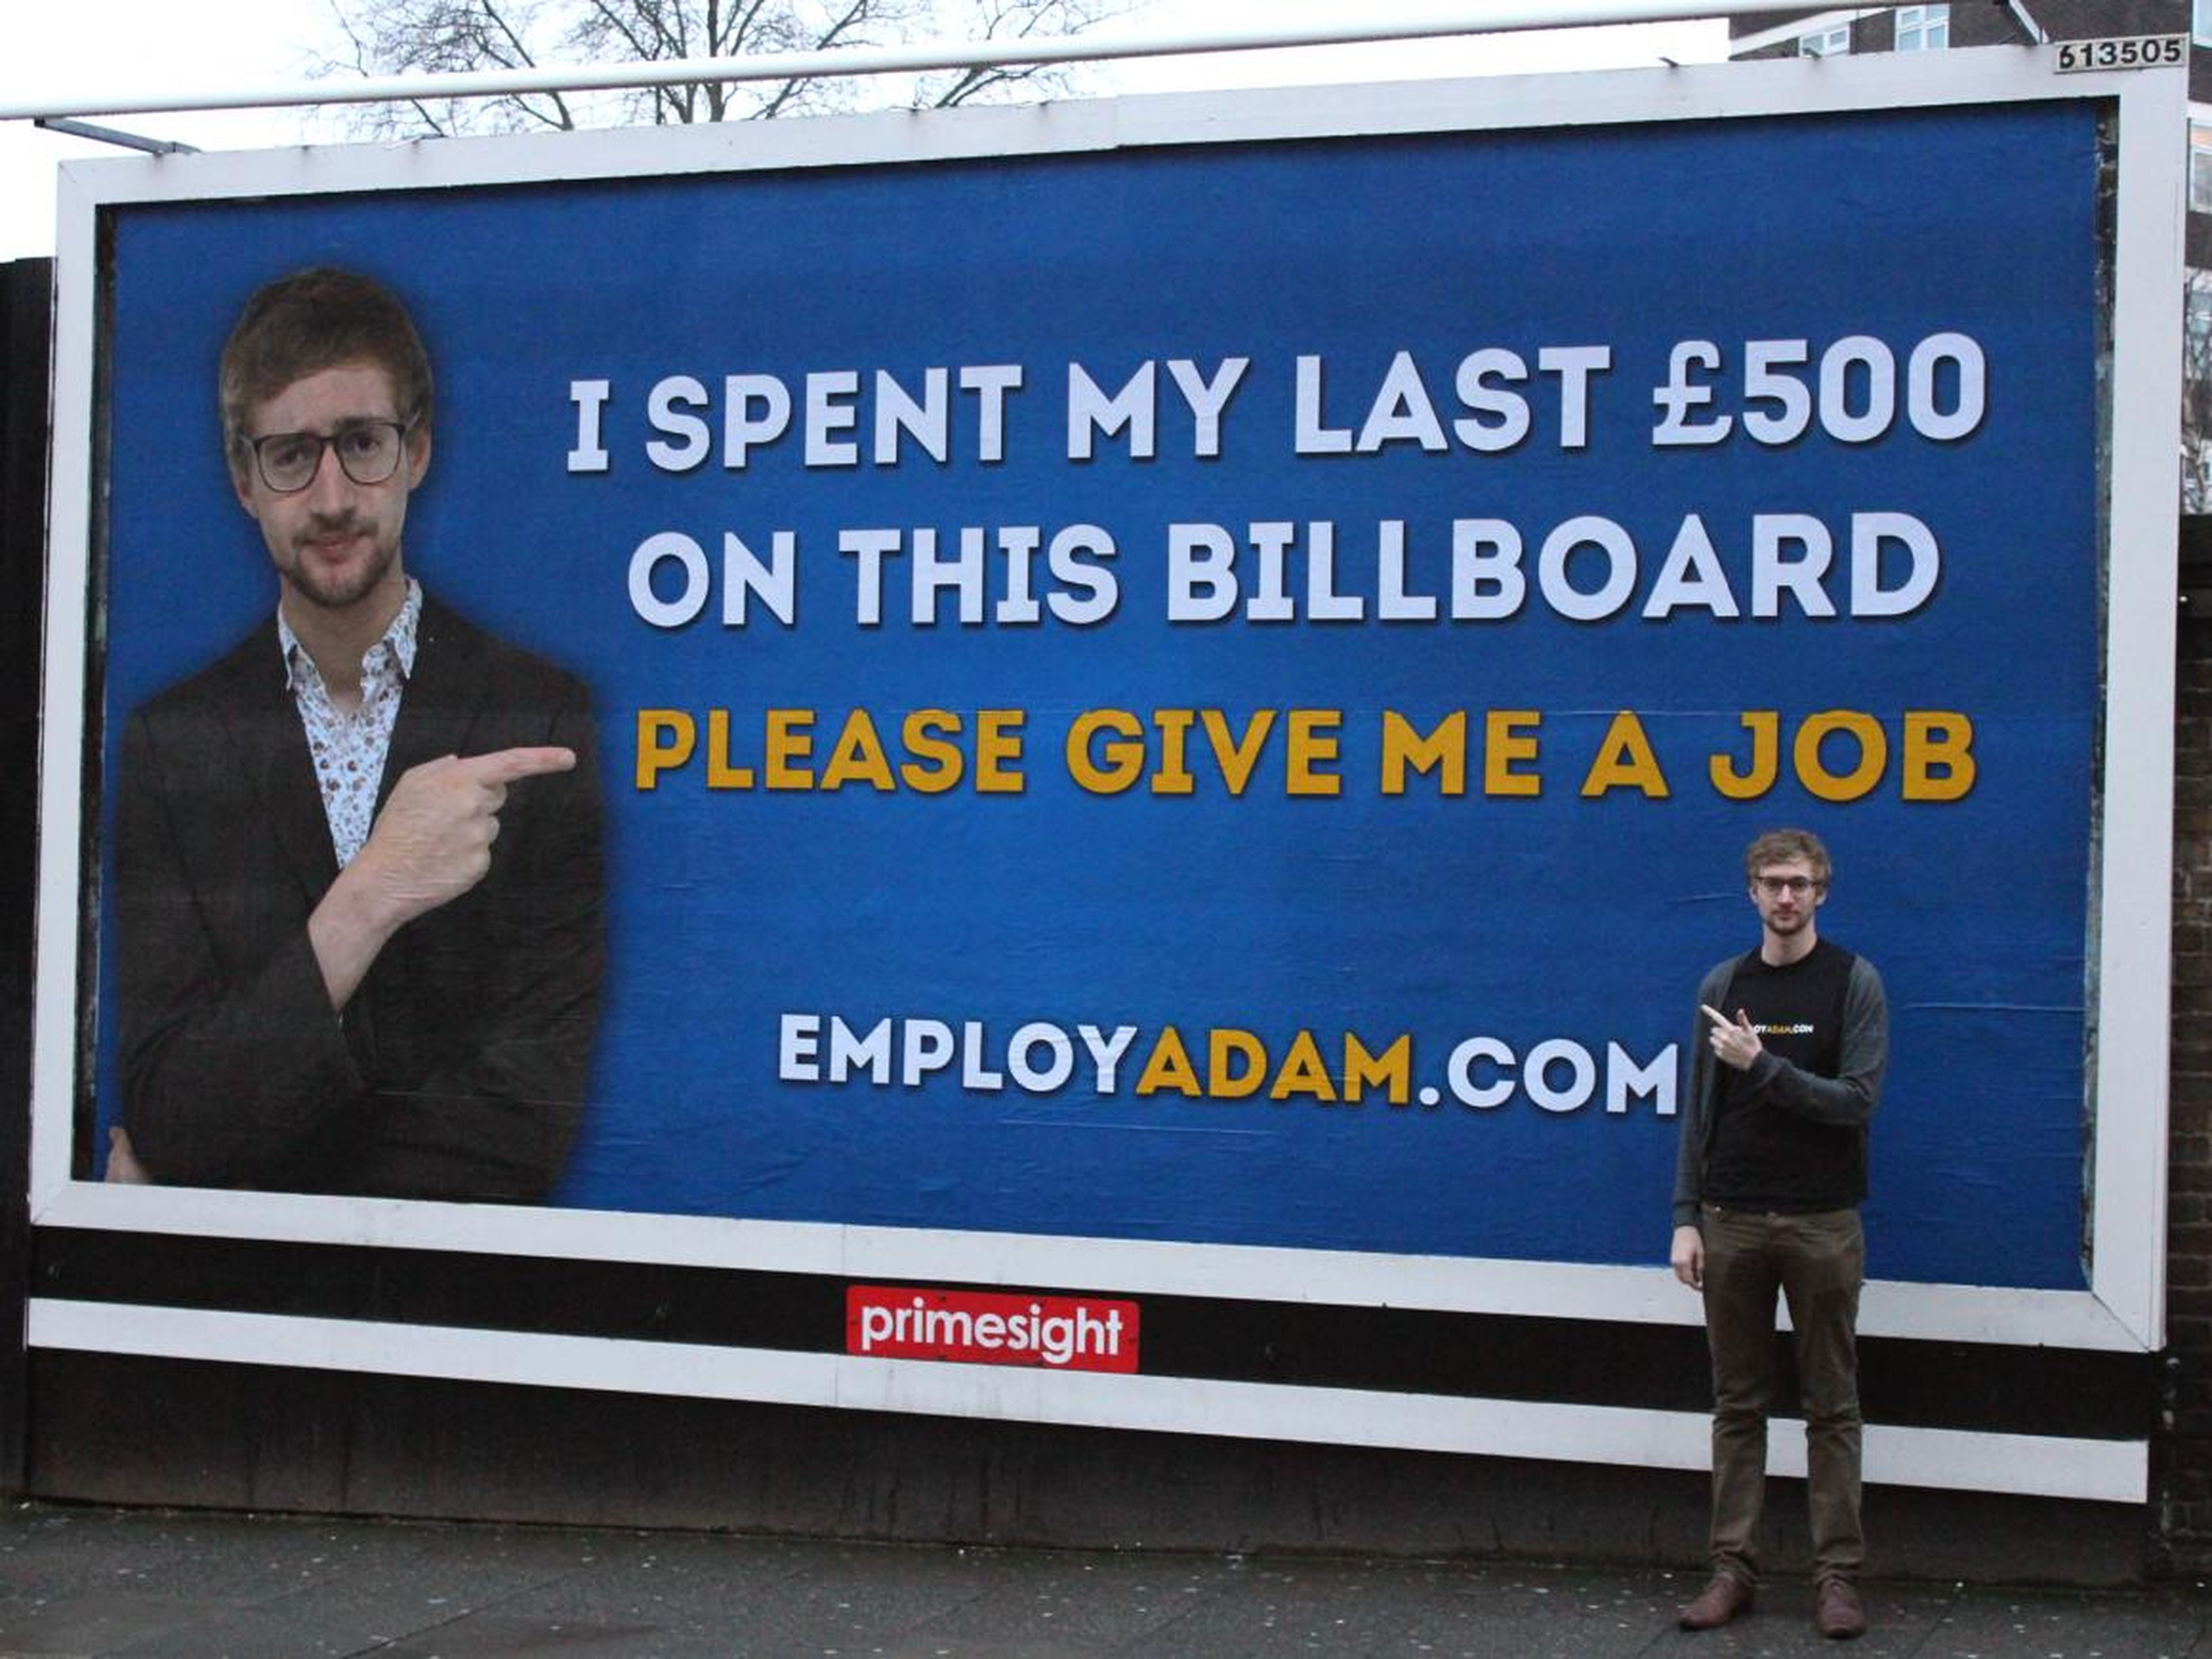 Adam Pacitti publicó un anuncio en una valla publicitaria, y terminó consiguiendo un trabajo.